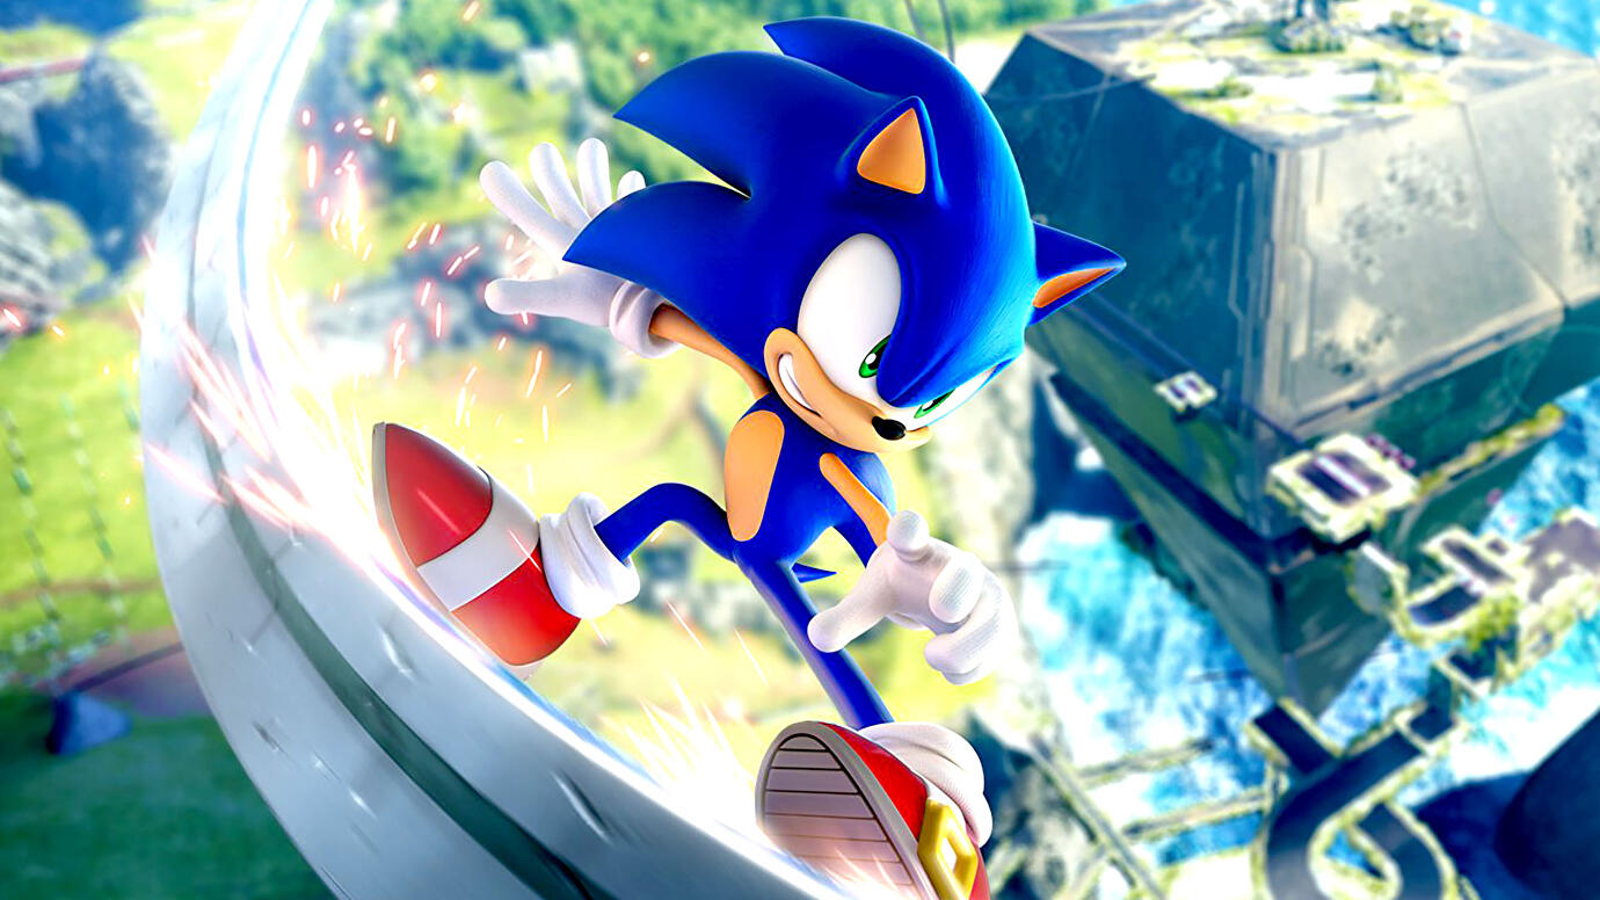 Com três zonas completas, demo de Sonic 2 HD já está disponível